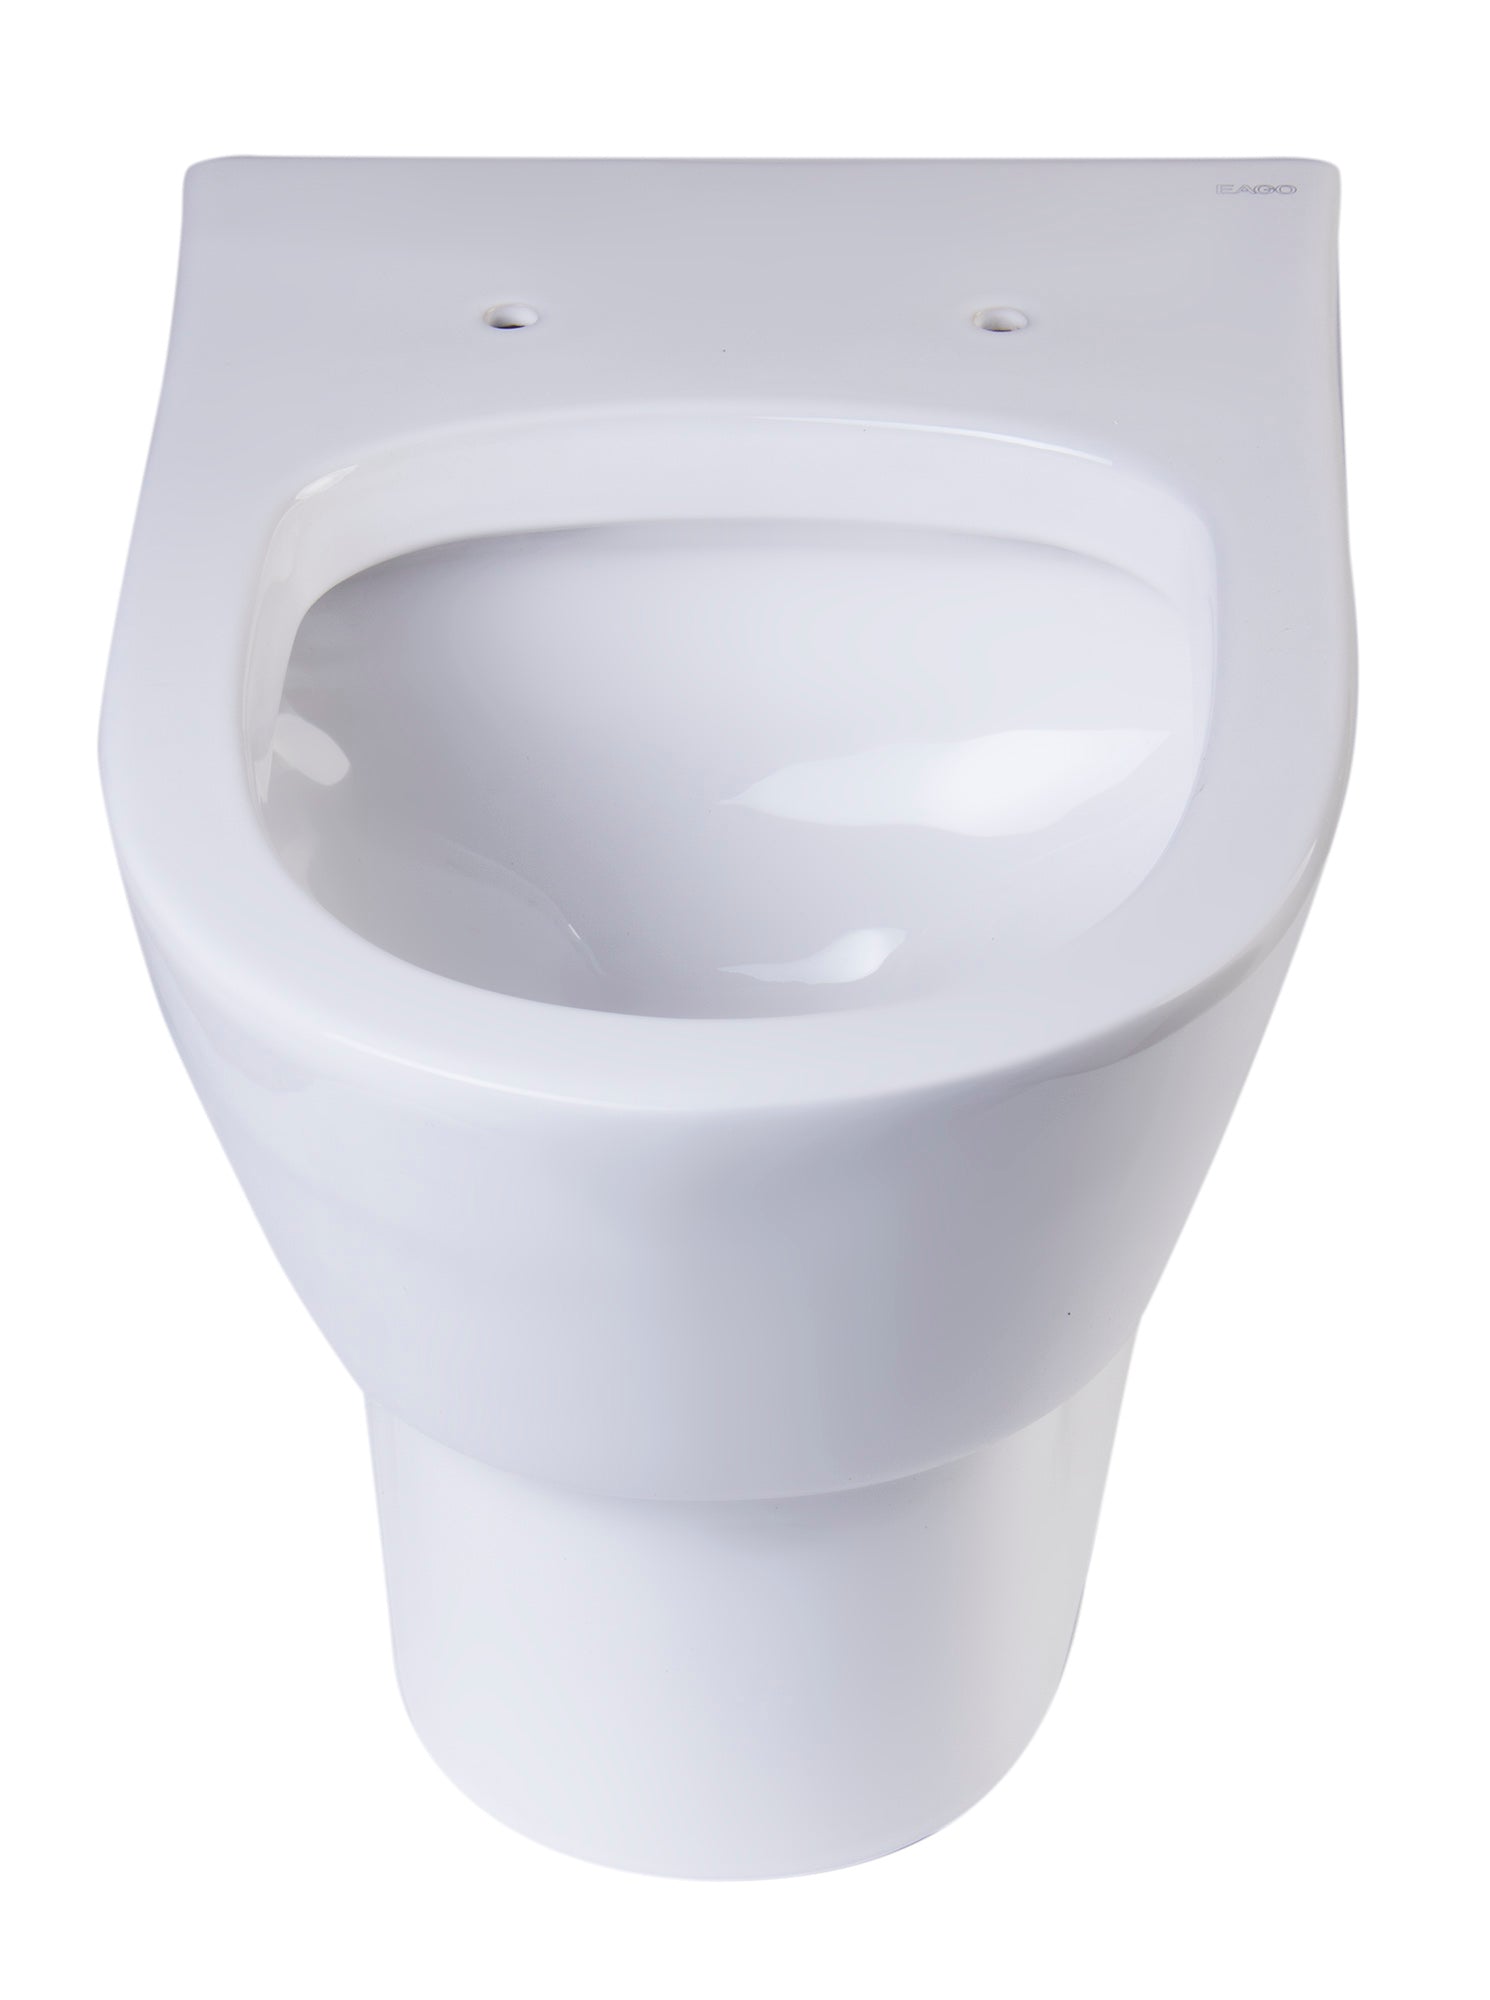 EAGO WD332 Toilet Bowl Modern Wall Mounted Dual-Flush White Ceramic